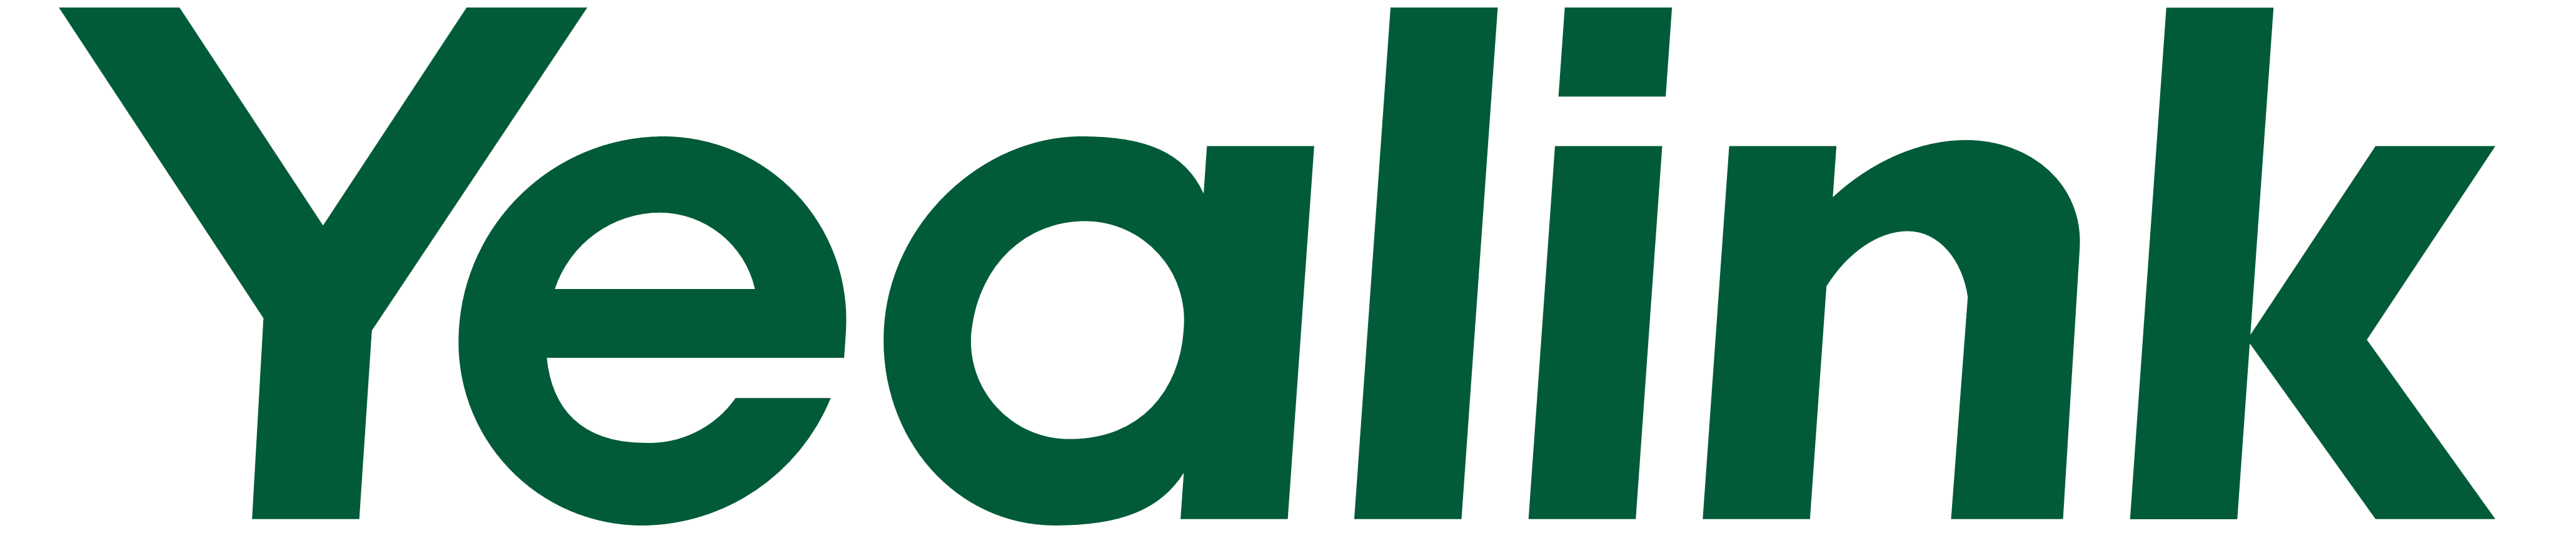 Yealink-logo